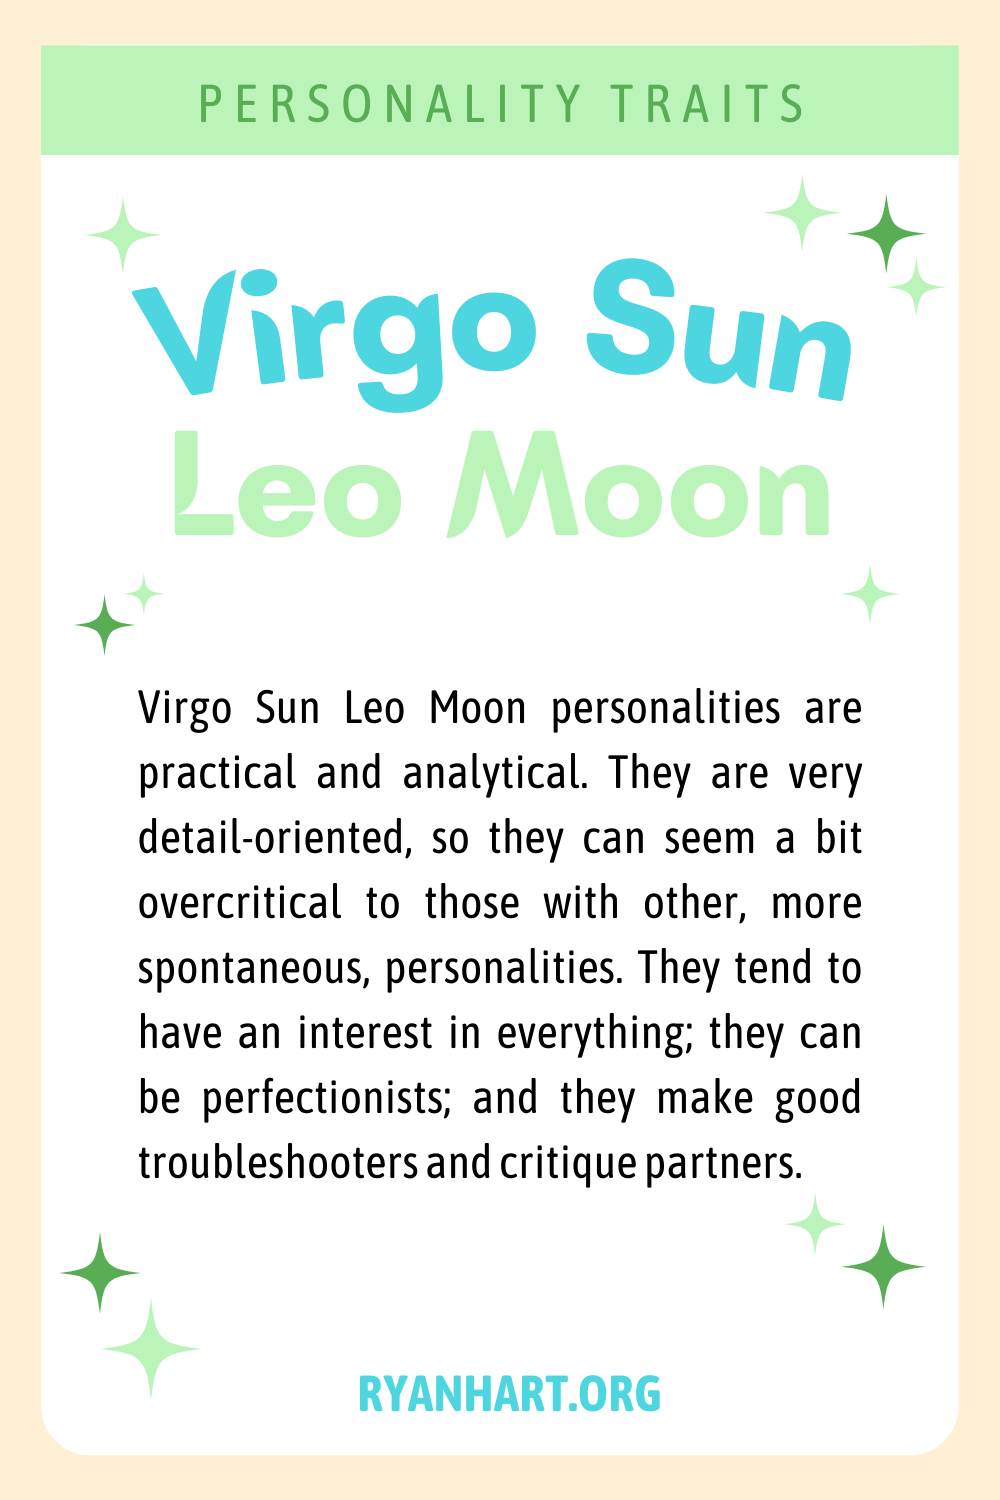  Virgo Sun Leo Moon Persoanlikheidstrekken